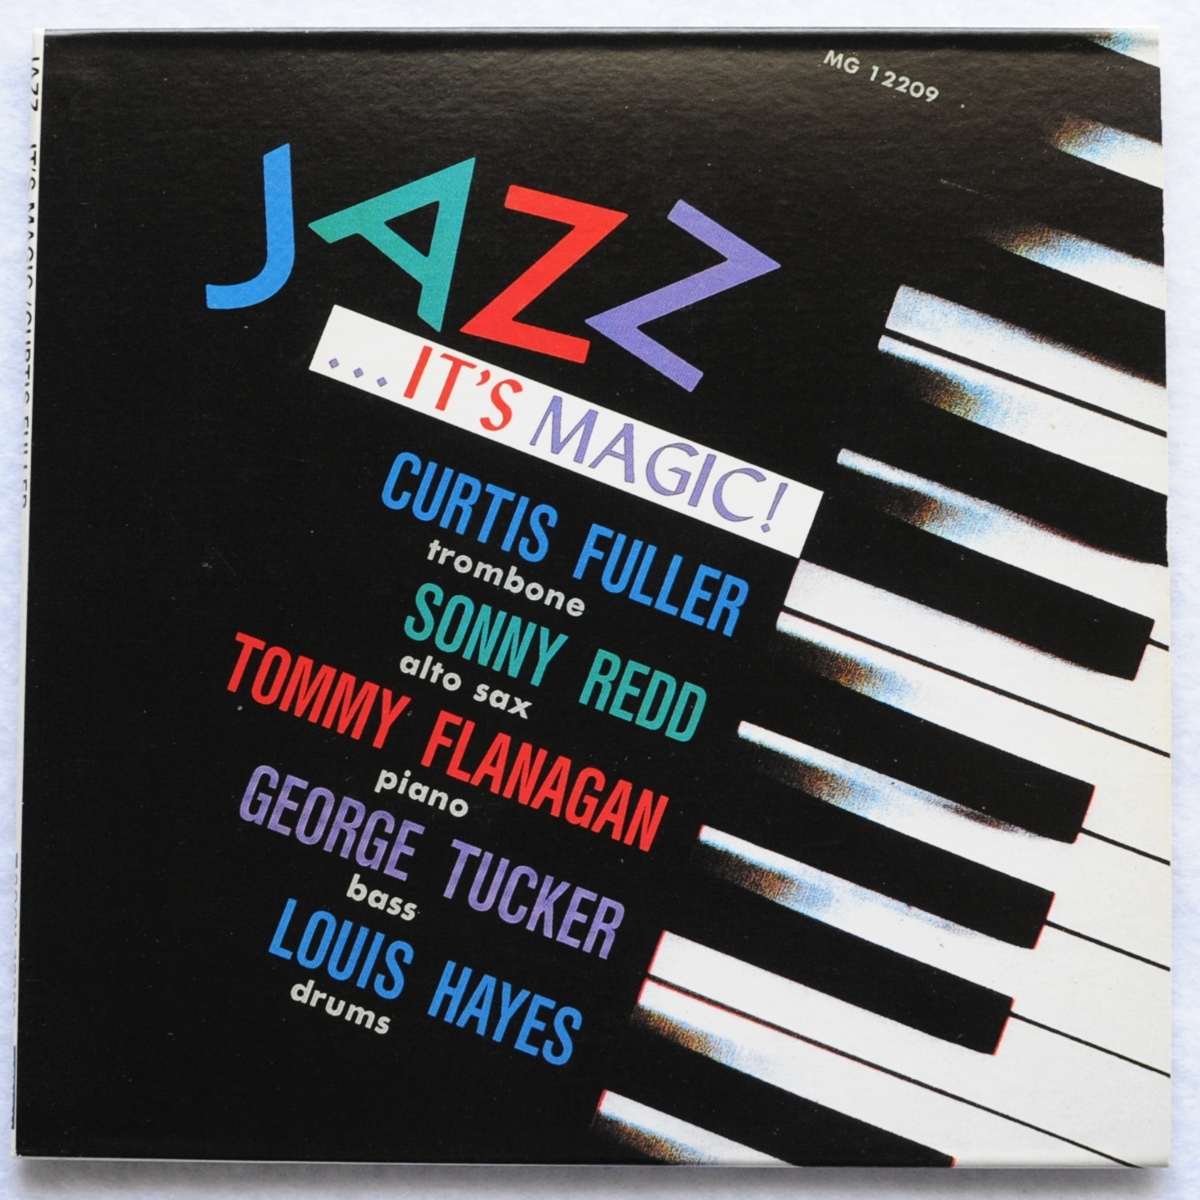 【紙ジャケジャズCD】カーティス・フラー/ジャズ・イッツ・マジック/Curtis Fuller/Jazz It's Magic/トミー・フラナガン/ソニー・レッド_画像1